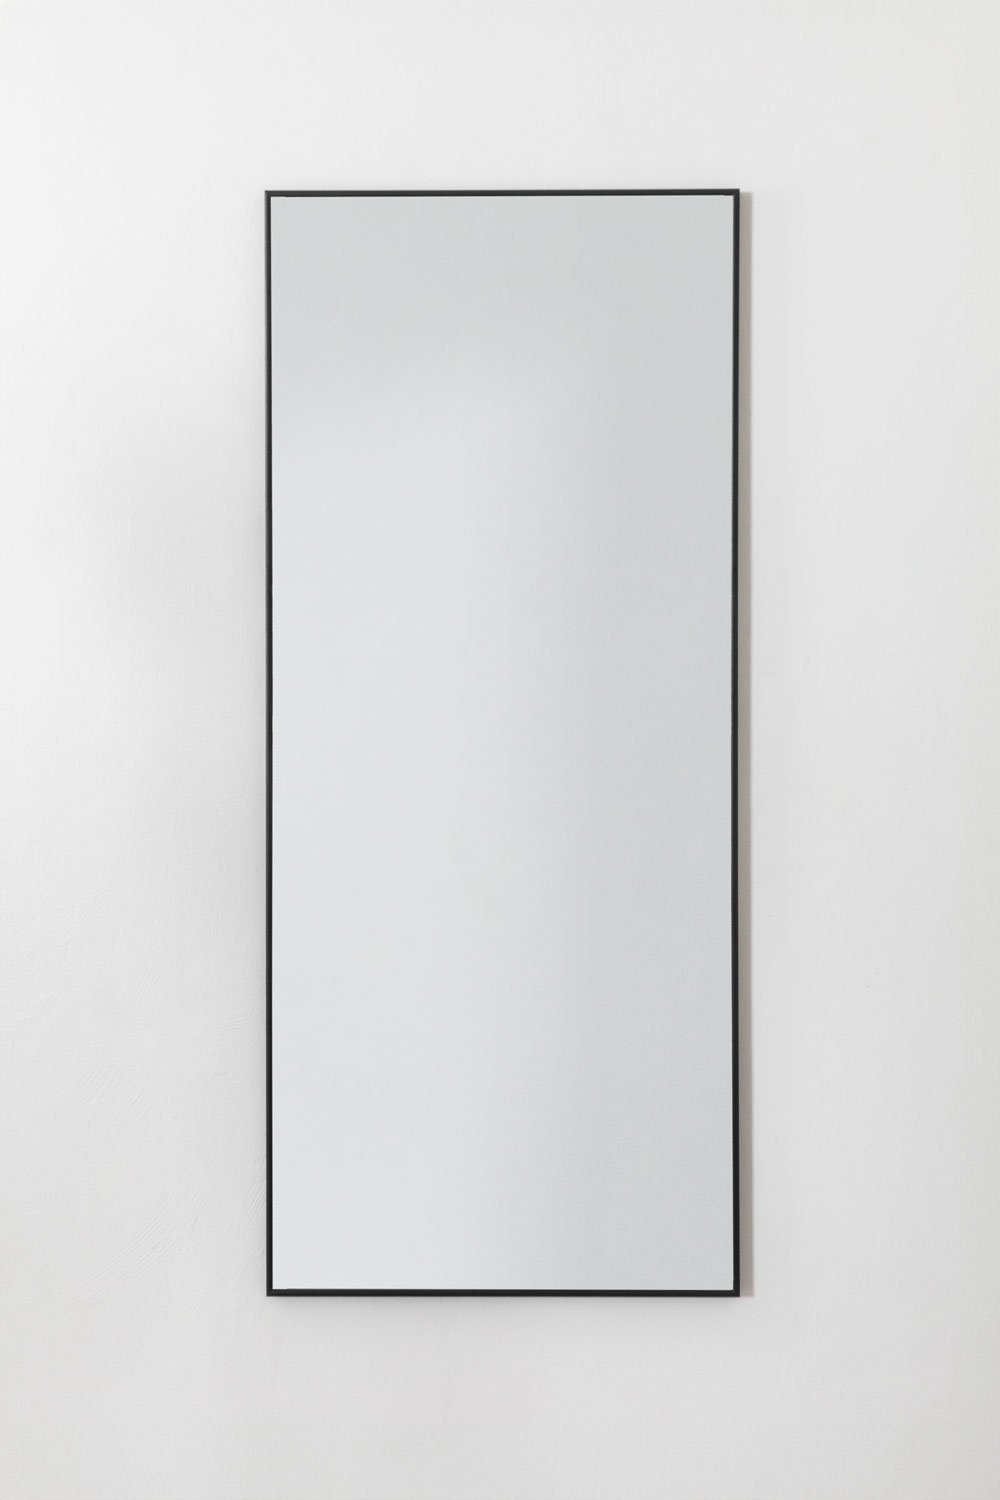 Specchio da parete in alluminio (60x140 cm) Kaoze, immagine della galleria 2